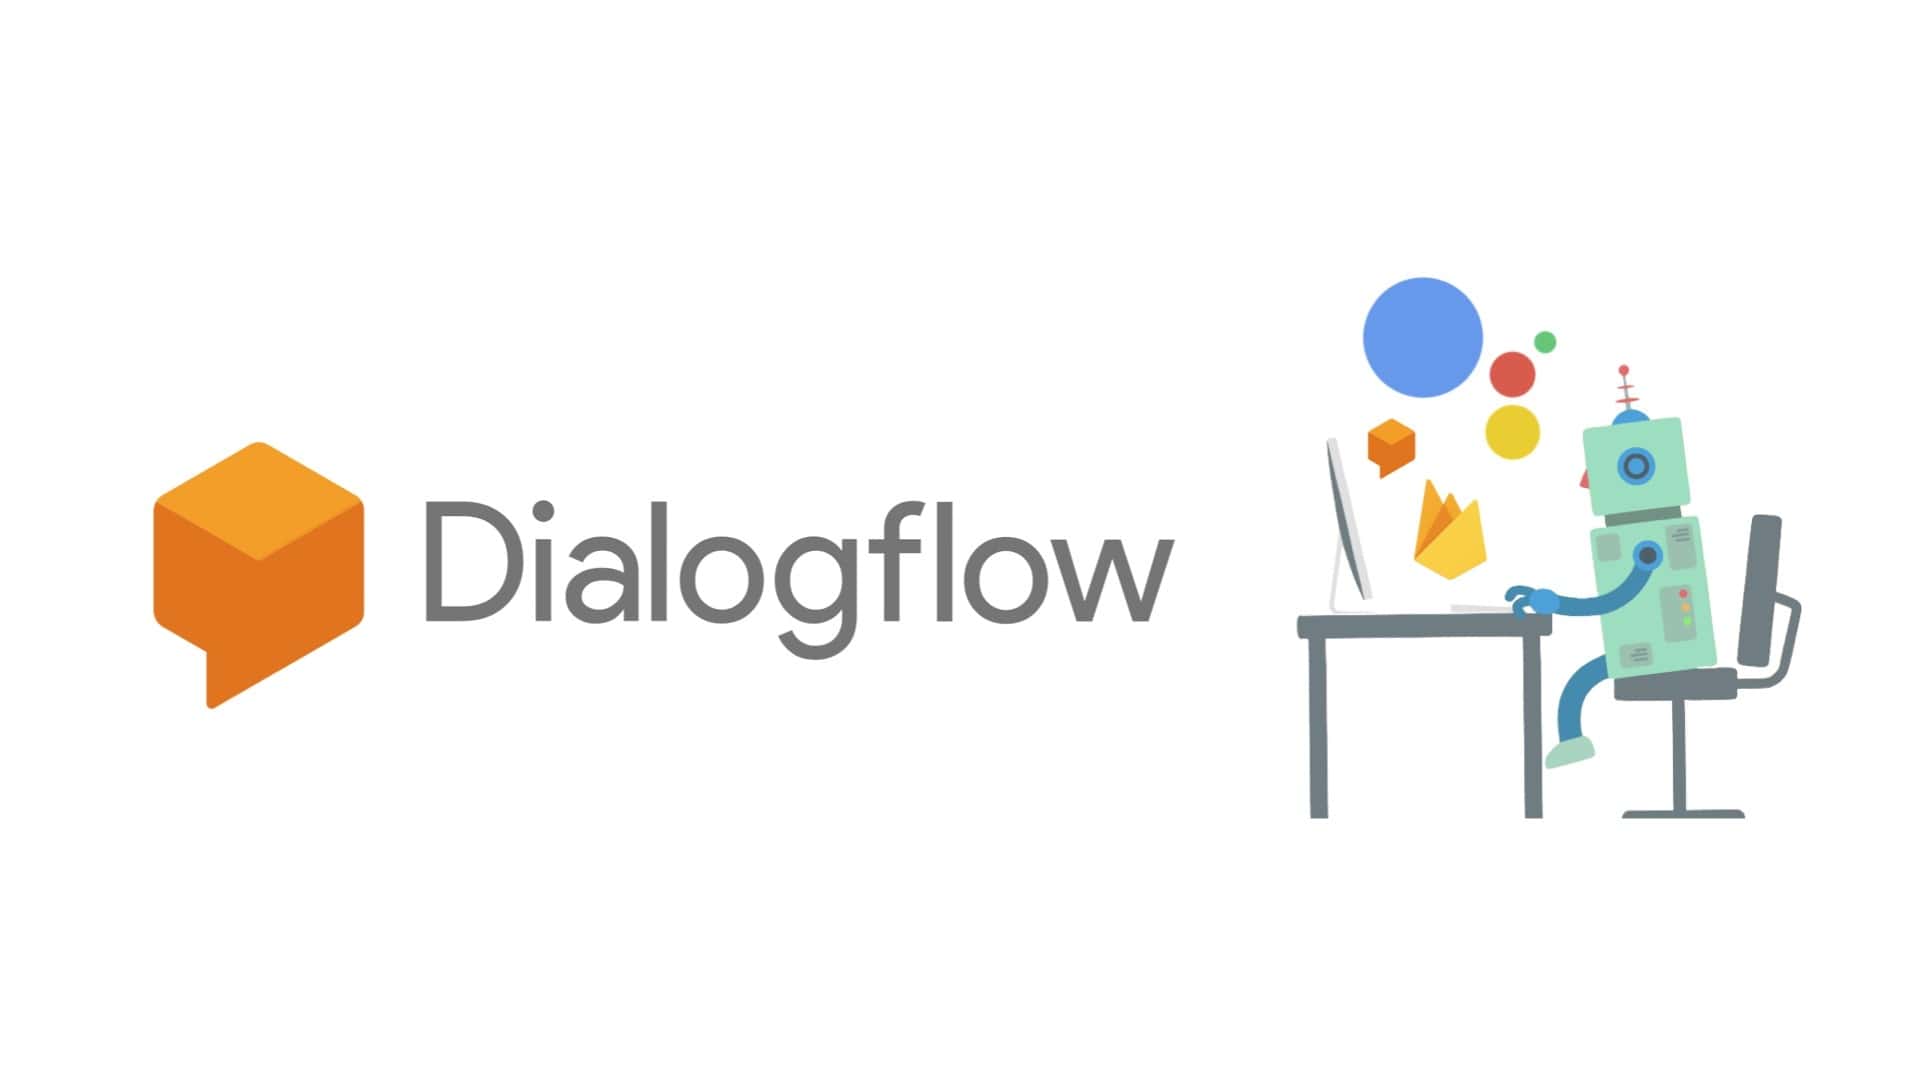 Google's Dialogflow